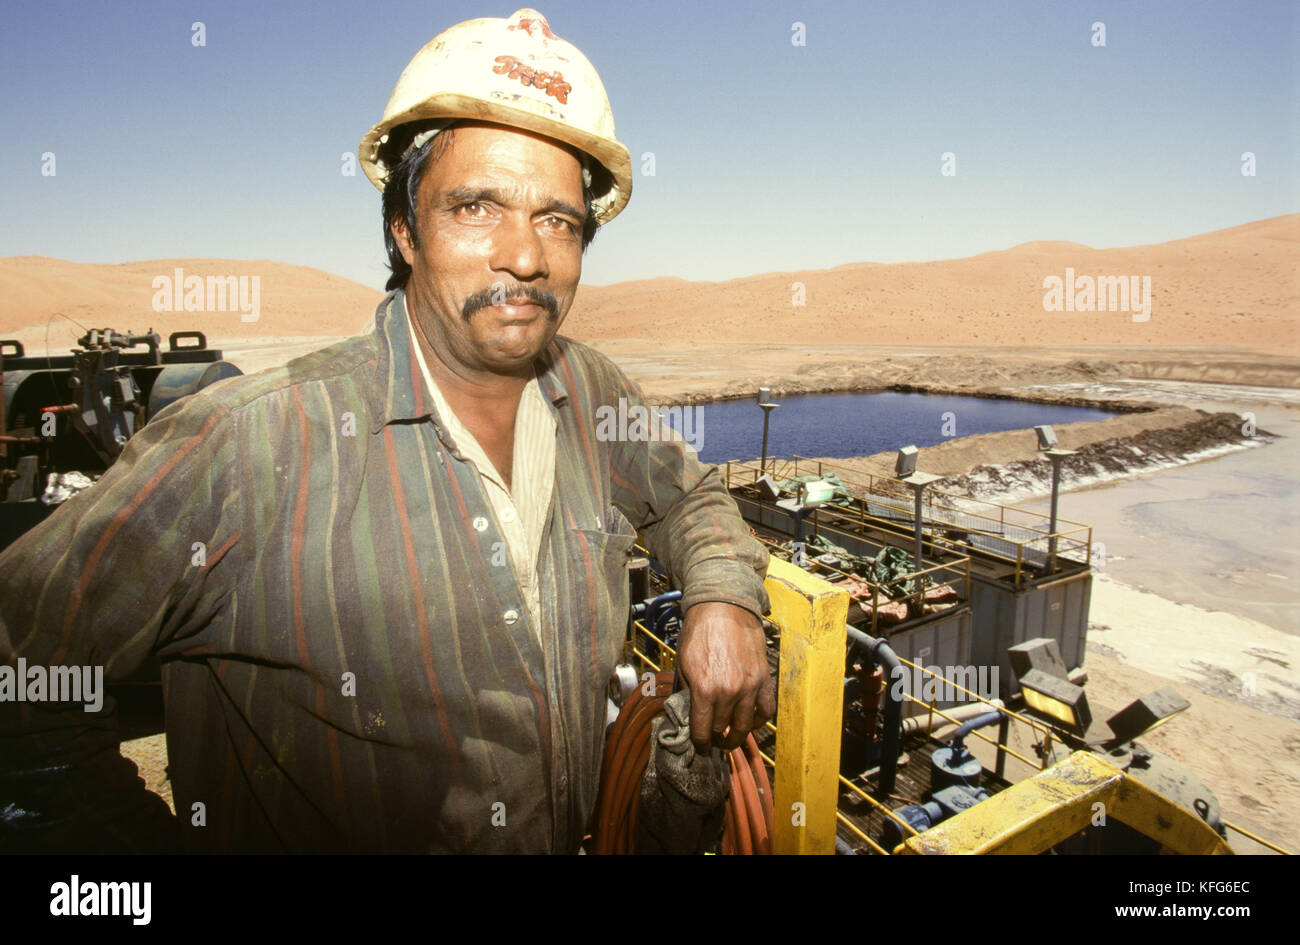 Eine Exploration von Öl und Gas rig in das Leere Viertel, in denen nachgewiesene Reserven sind reichlich und die schließlich werden in der shaybah Gas öl Luftzerlegungsanlage (gosp), eine große Gas-, Öl- und Produktionsstätte in das Leere Viertel Wüste Saudi Arabiens, in der Nähe der Grenze zu den Vereinigten Arabischen Emiraten. Stockfoto